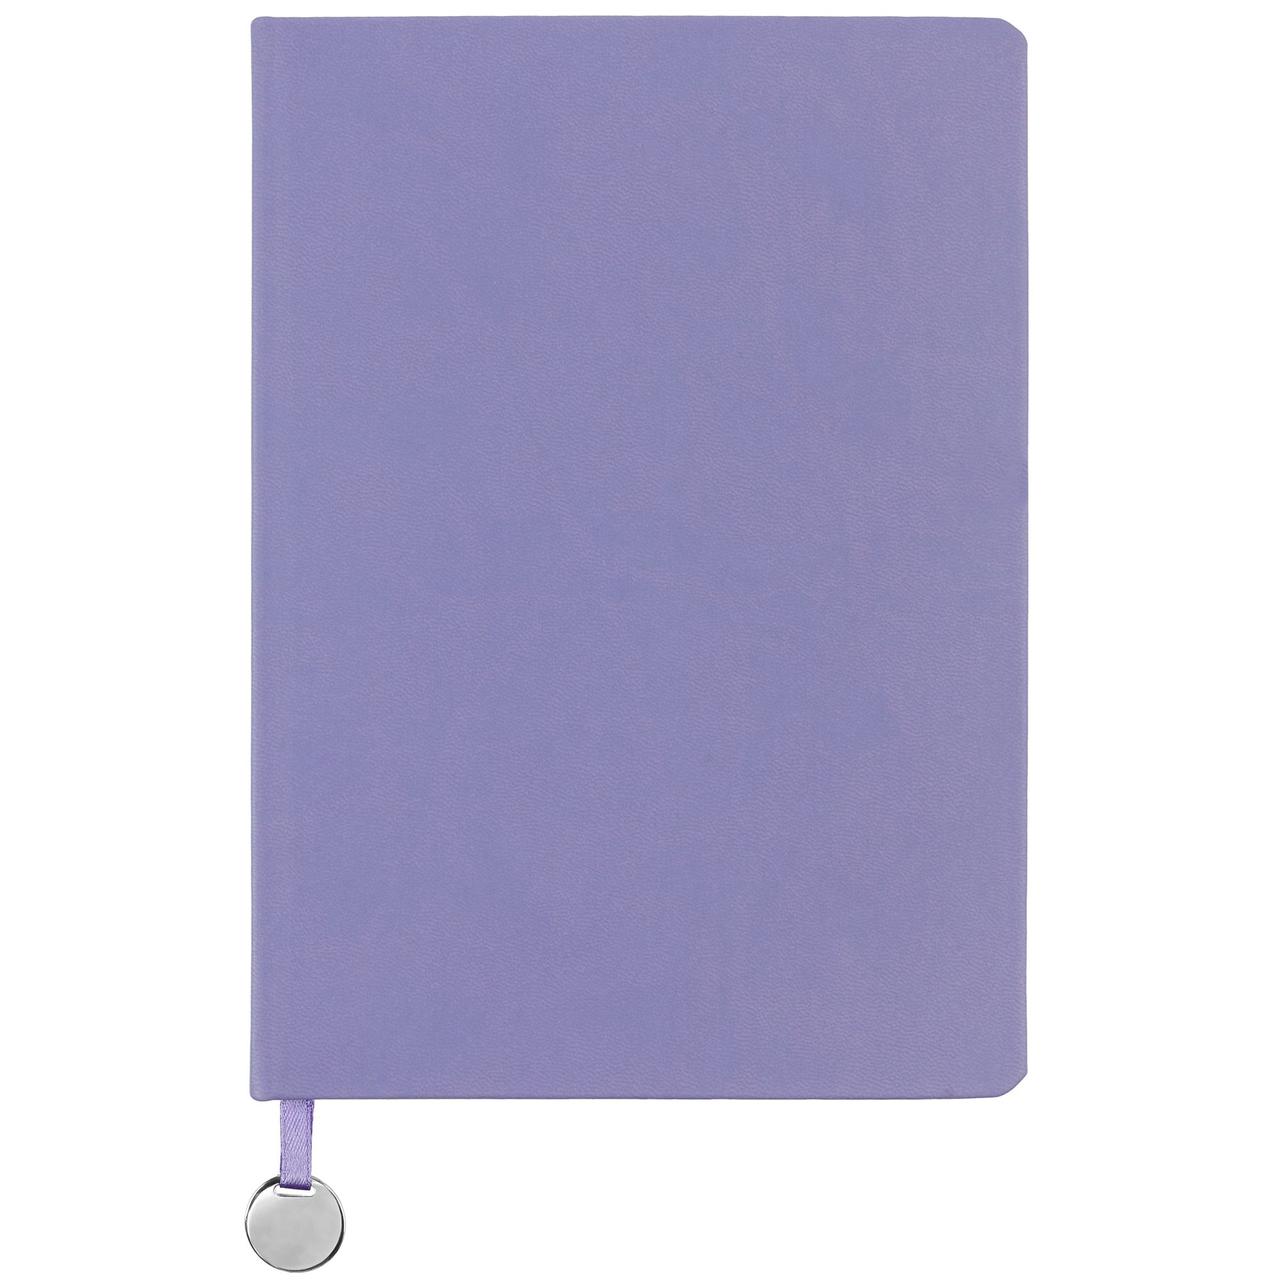 Ежедневник Exact, недатированный, фиолетовый (артикул 7882.70)